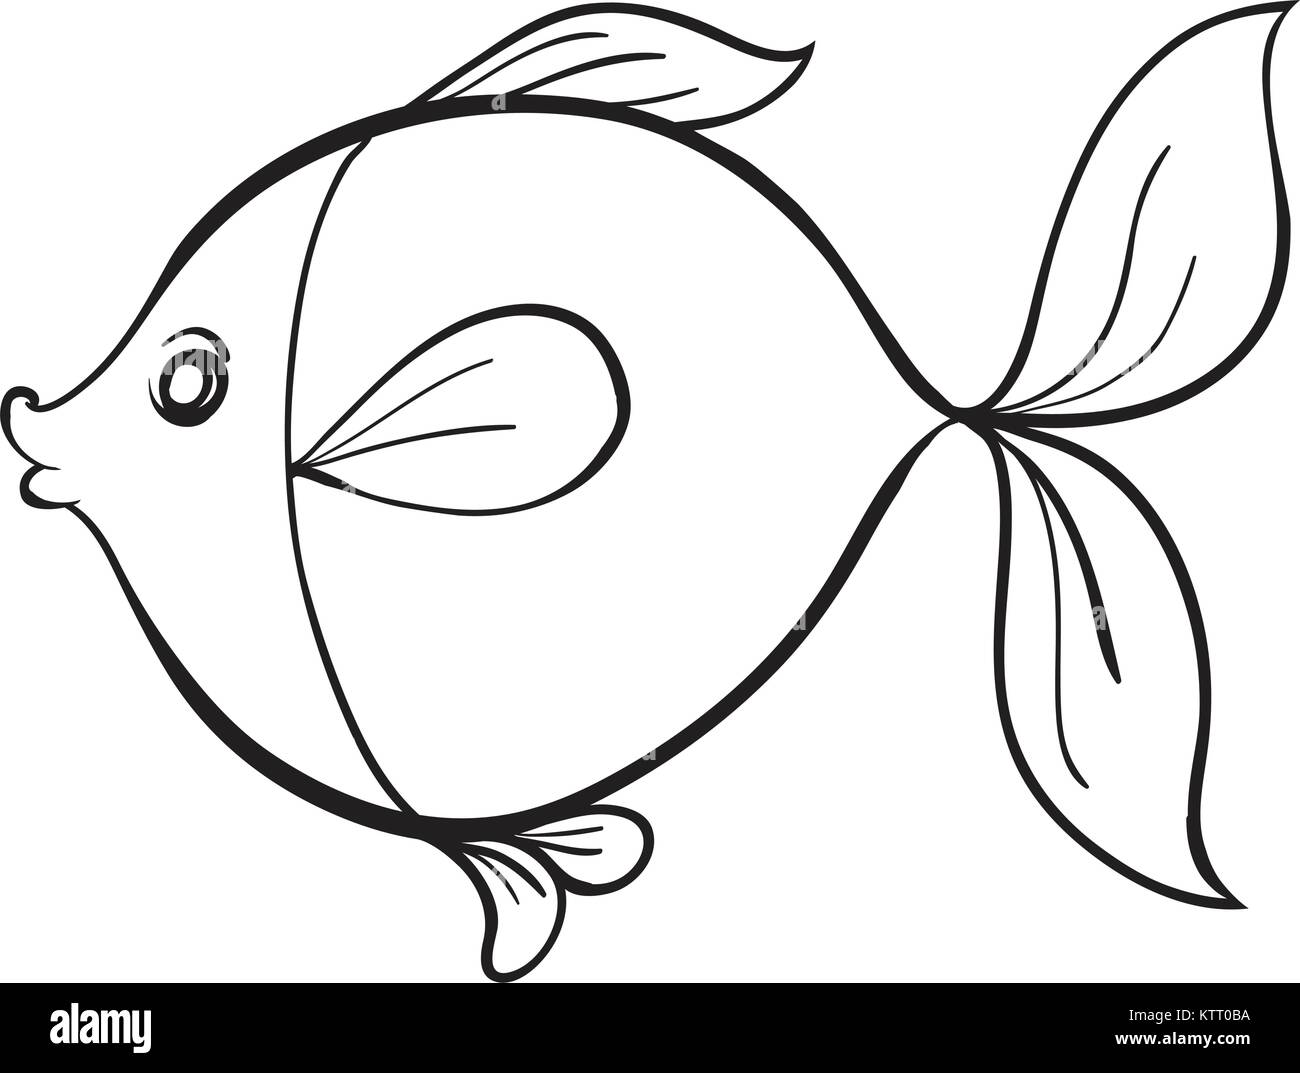 https://c8.alamy.com/comp/KTT0BA/detailed-illustration-of-a-fish-line-art-on-white-KTT0BA.jpg